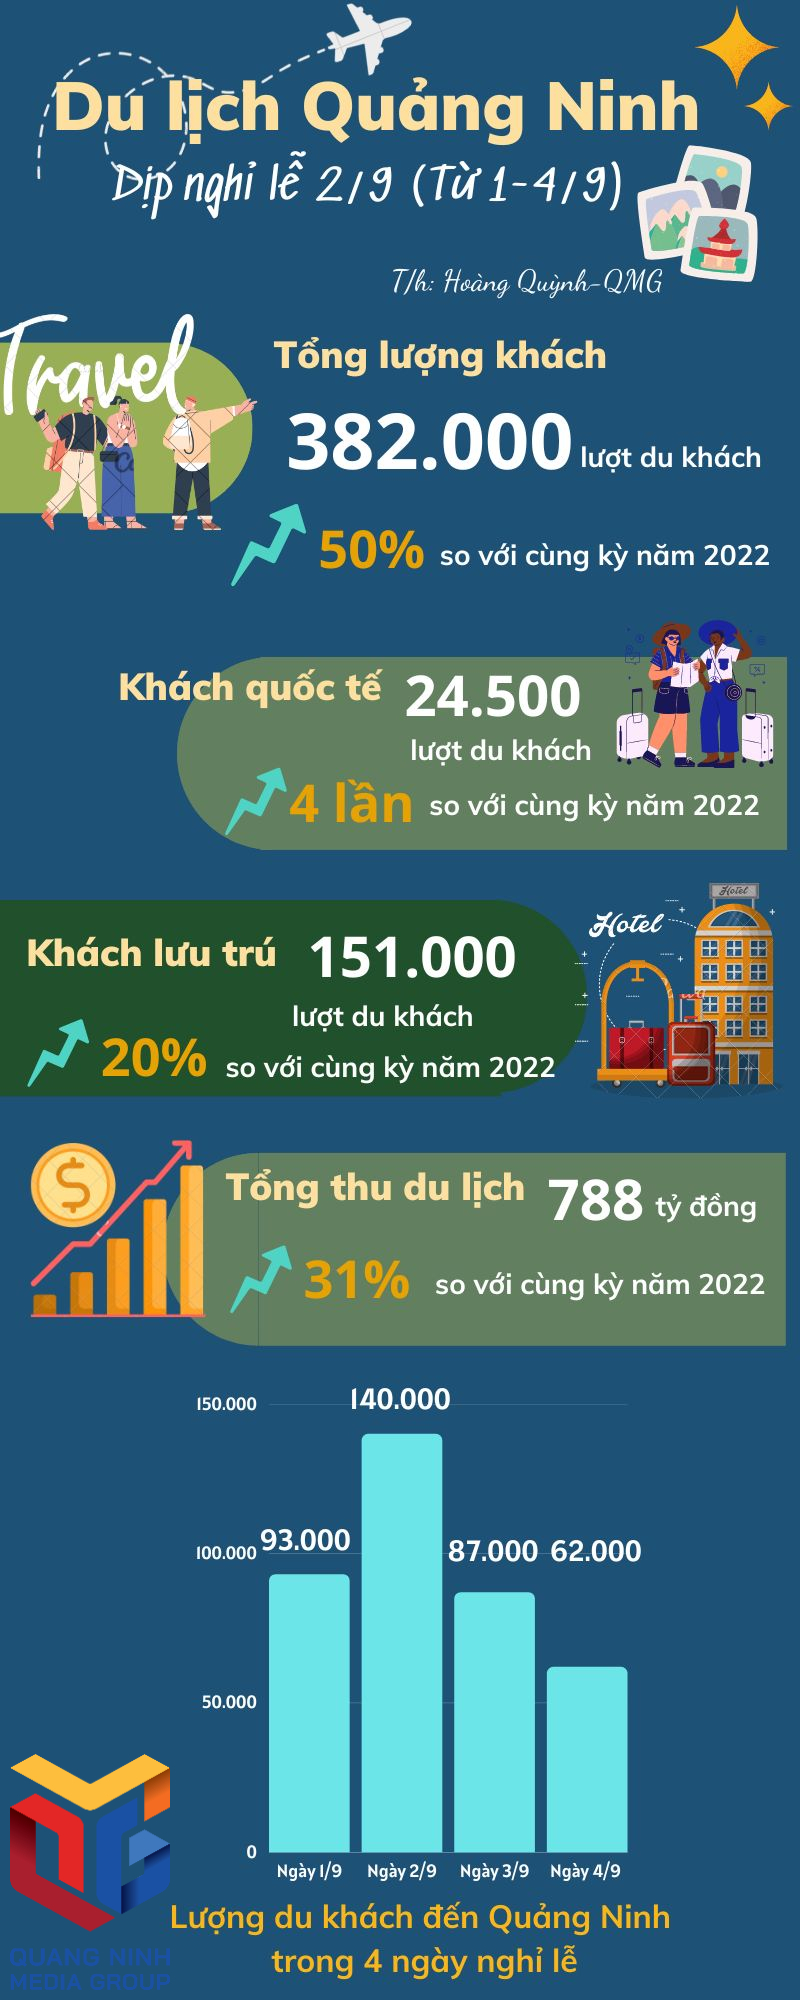 Quảng Ninh đón khoảng 382.000 lượt du khách dịp nghỉ lễ Quốc khánh 2/9